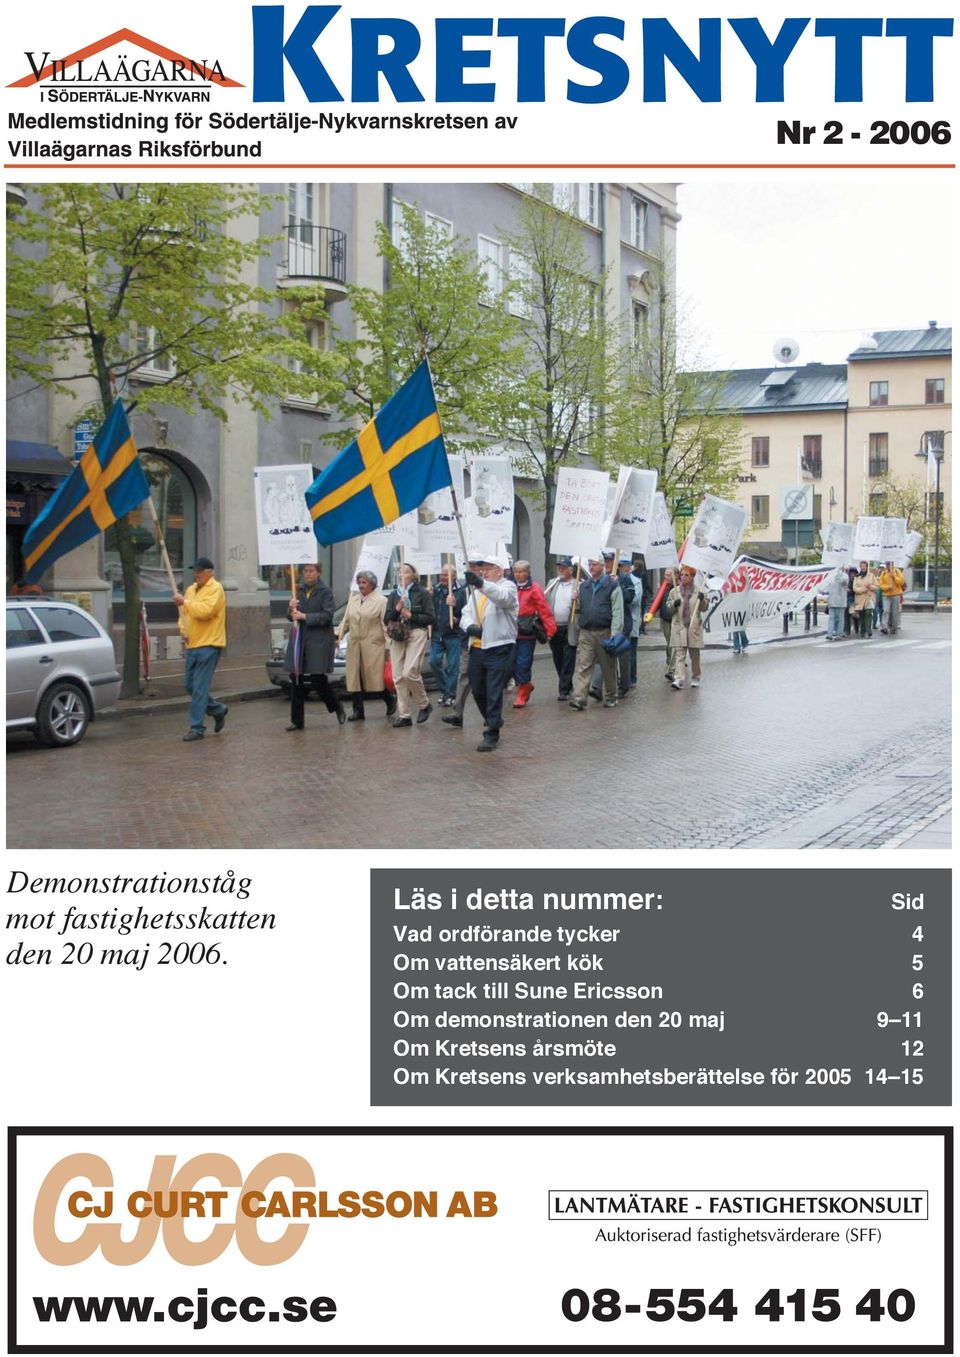 tack till Sune Ericsson 6 Om demonstrationen den 20 maj 9 11 Om Kretsens